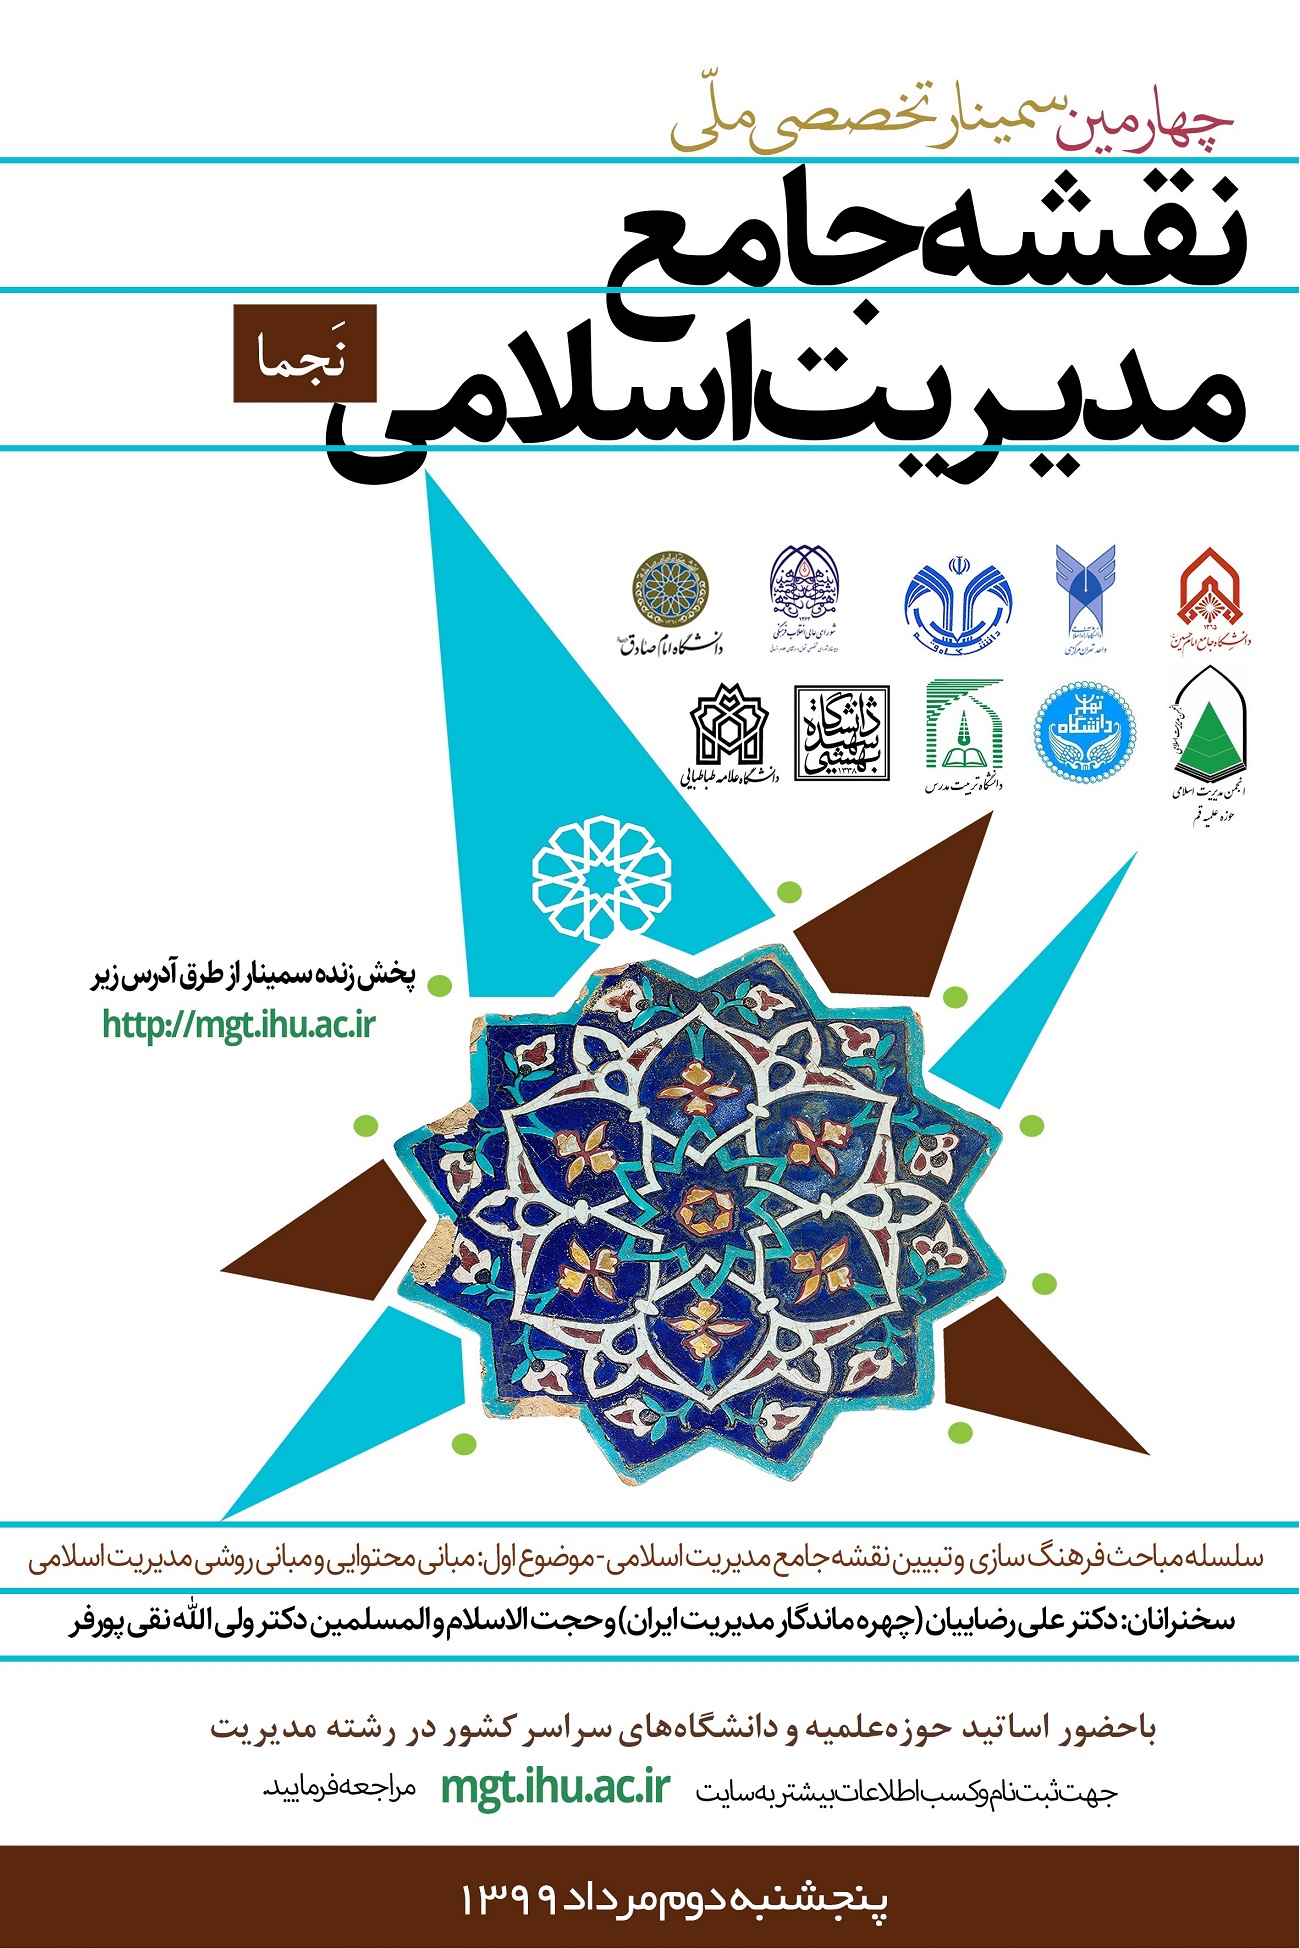 خبر: گزارش برگزاری چهارمین سمینار ملّی نقشه جامع مدیریت اسلامی (نجما 4)